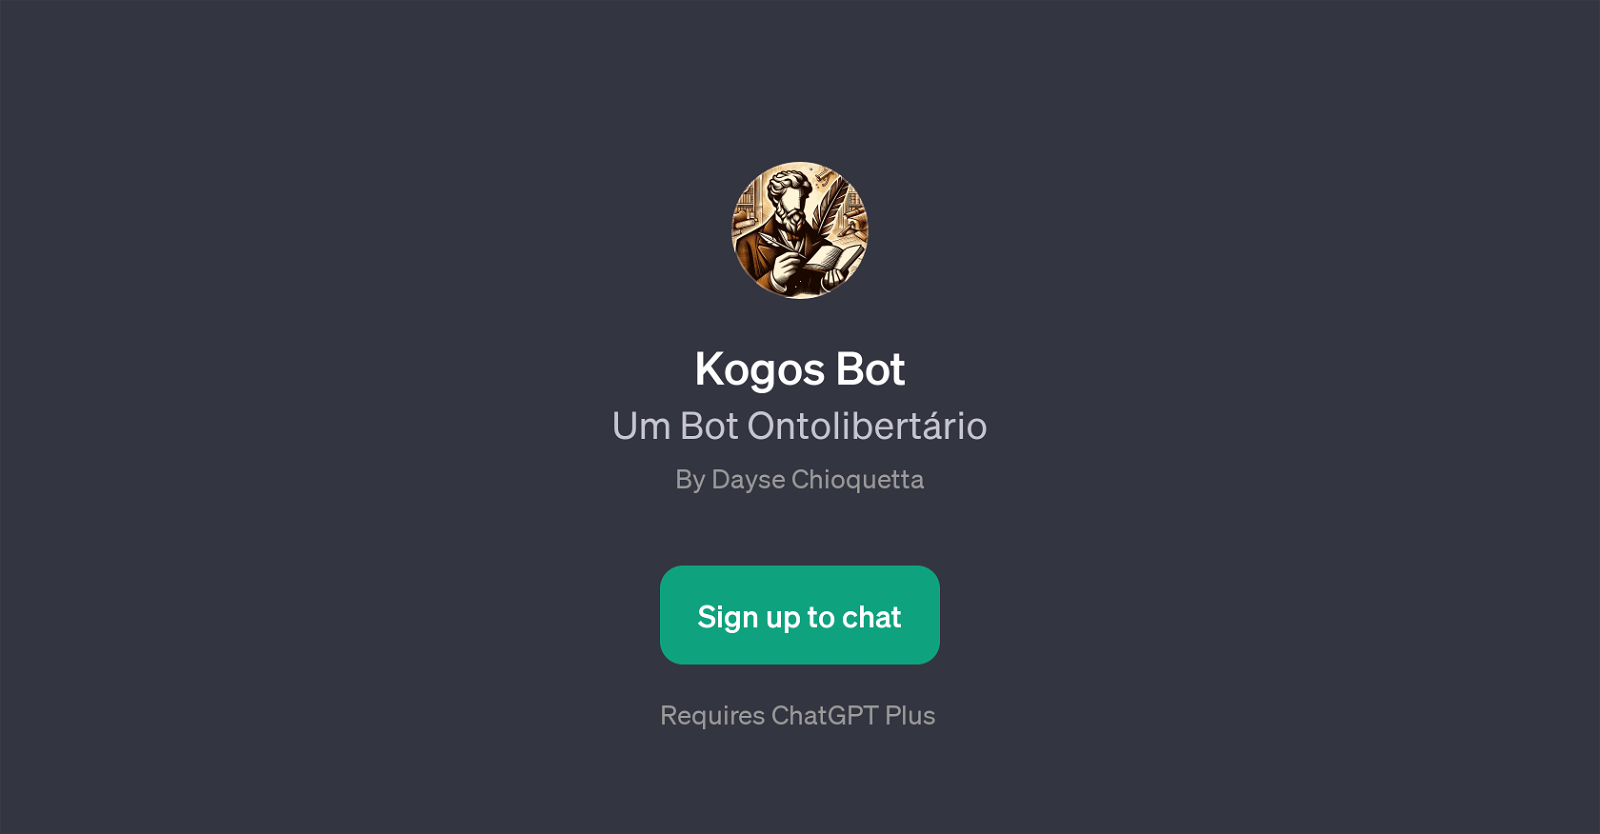 Kogos Bot website